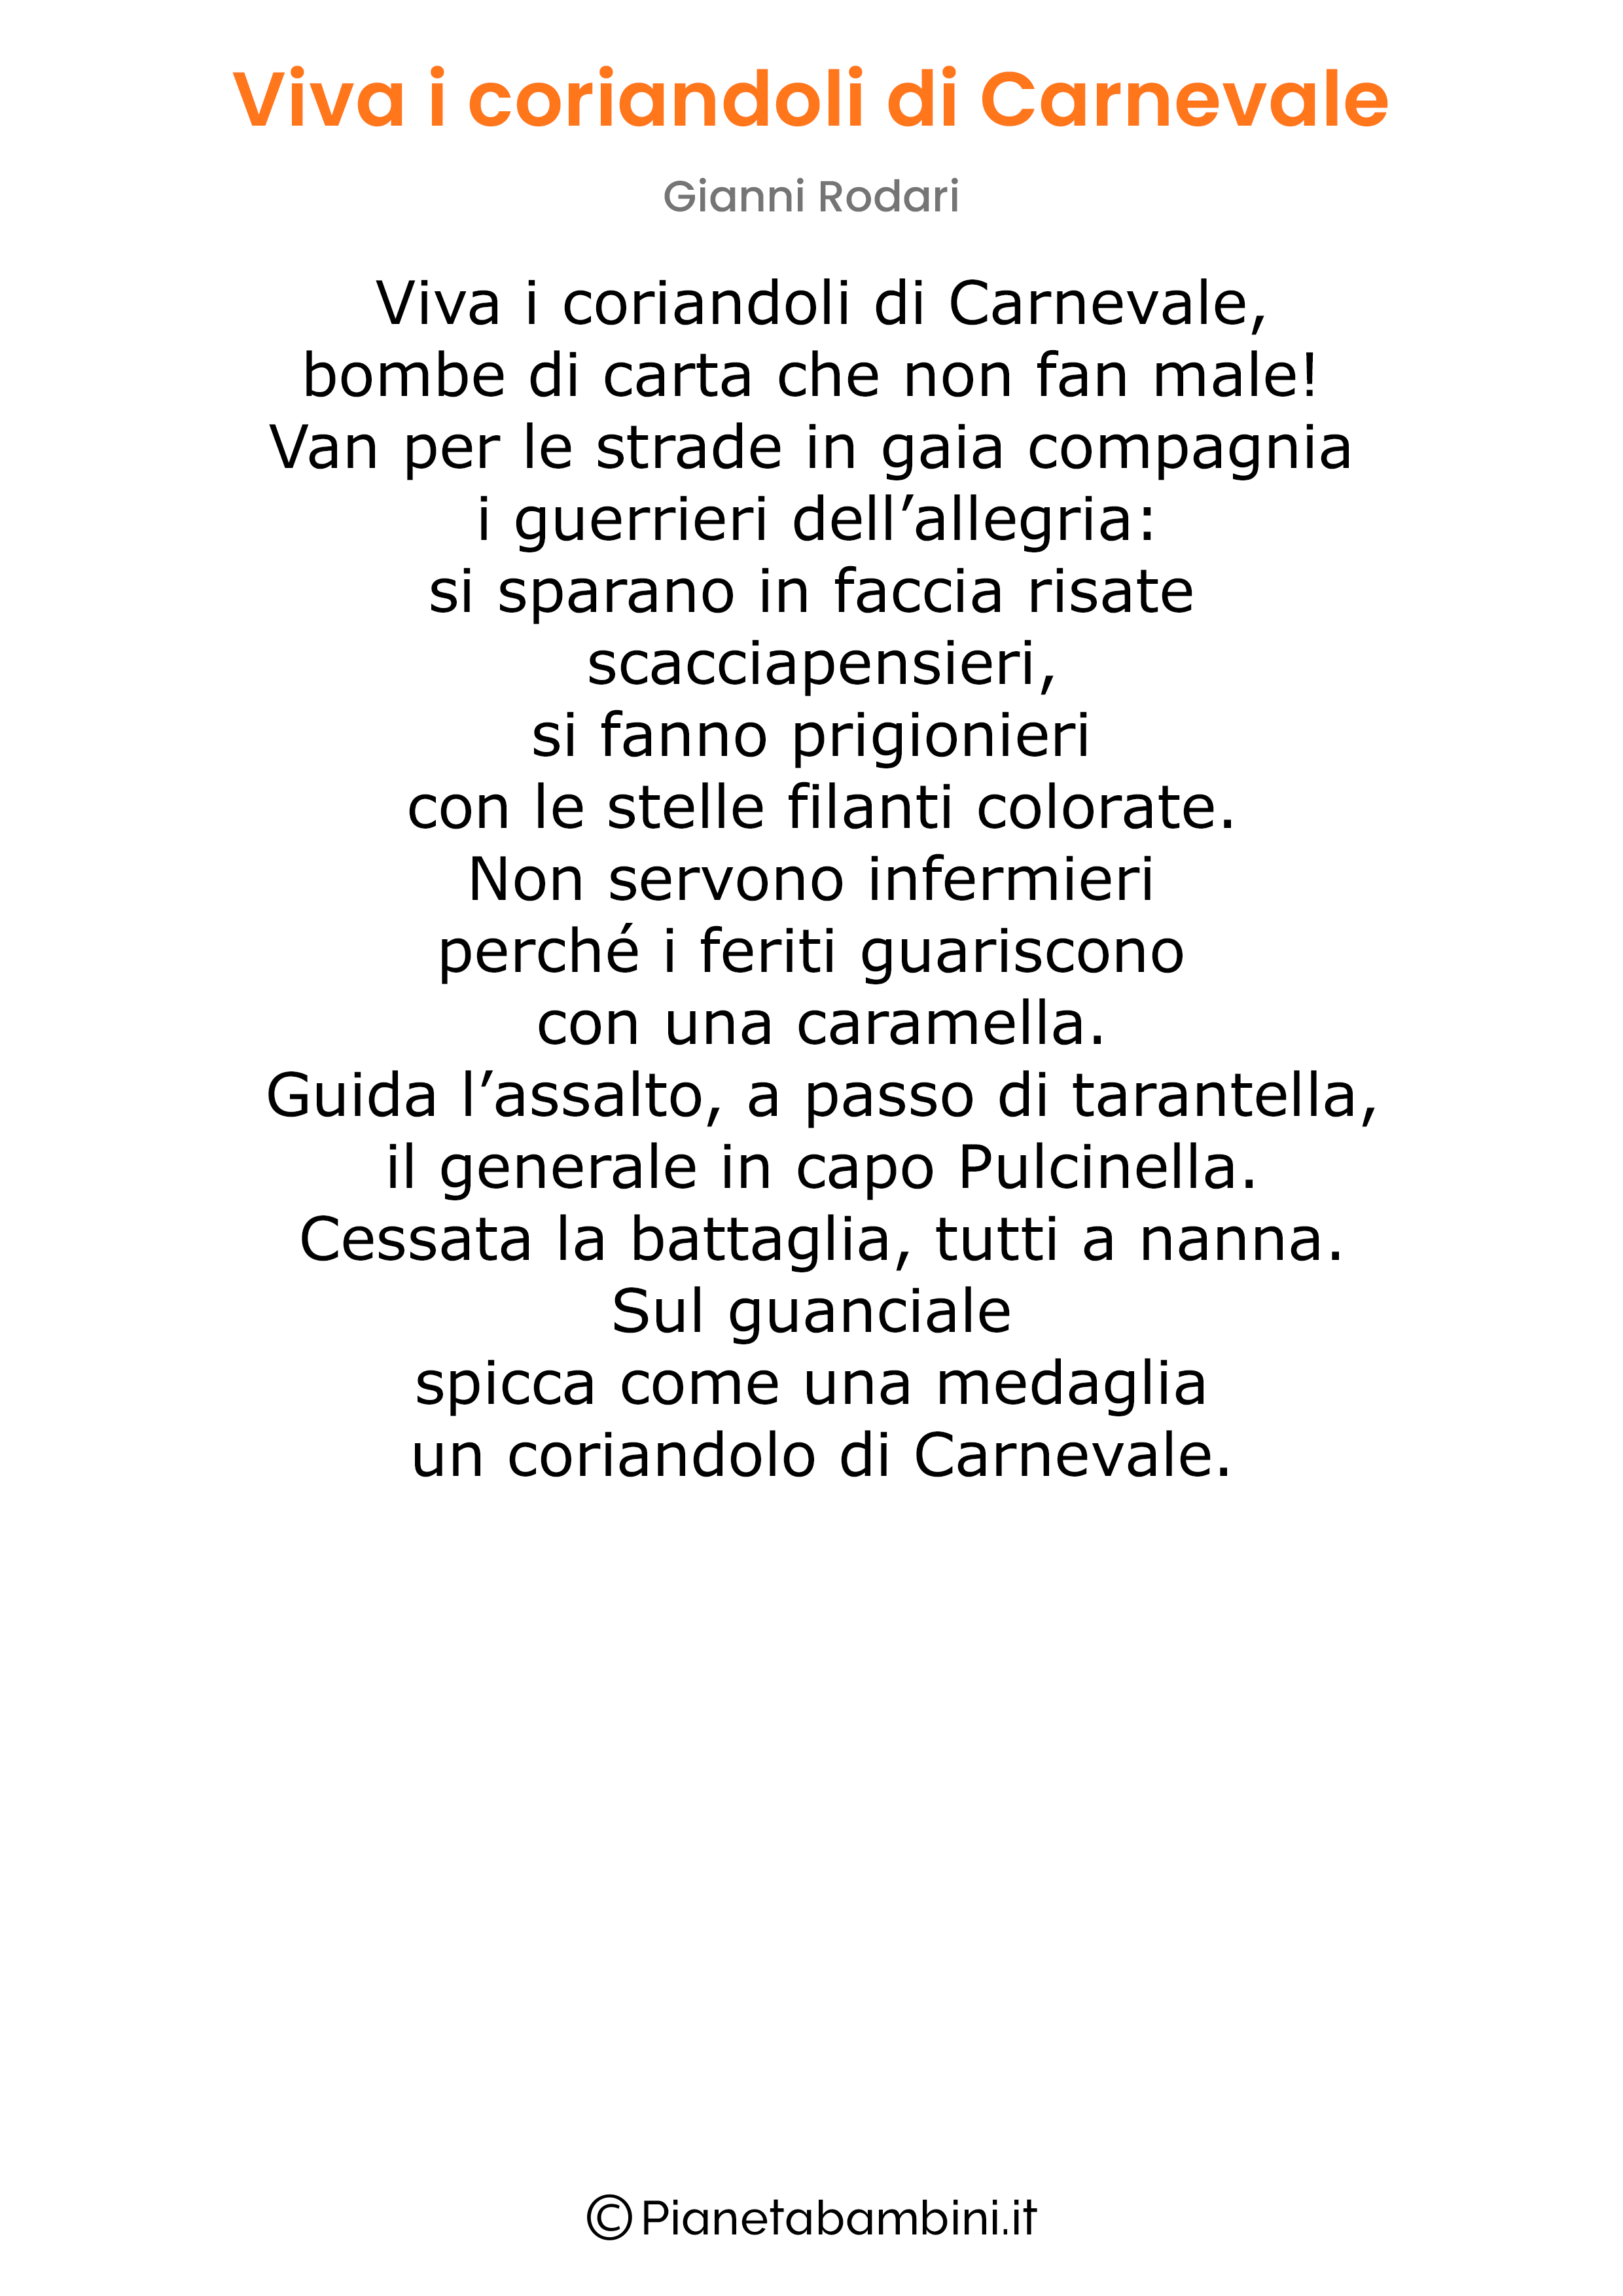 Poesia Carnevale Gianni Rodari da stampare 02